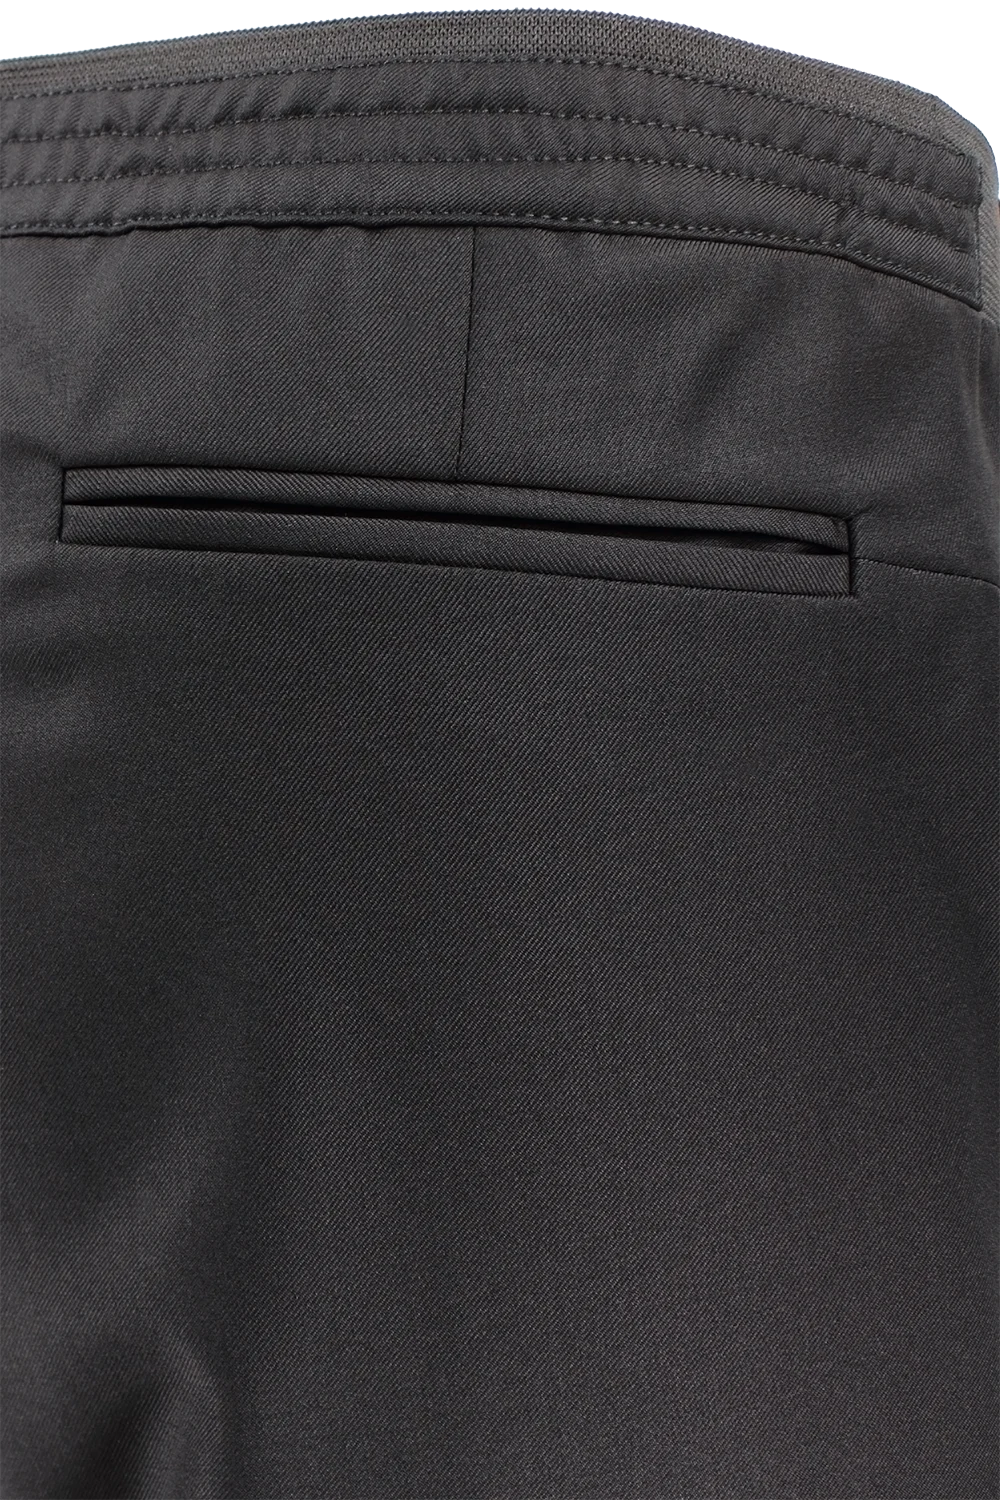 Pantalone con elastico sartoriale in lana nera filetti